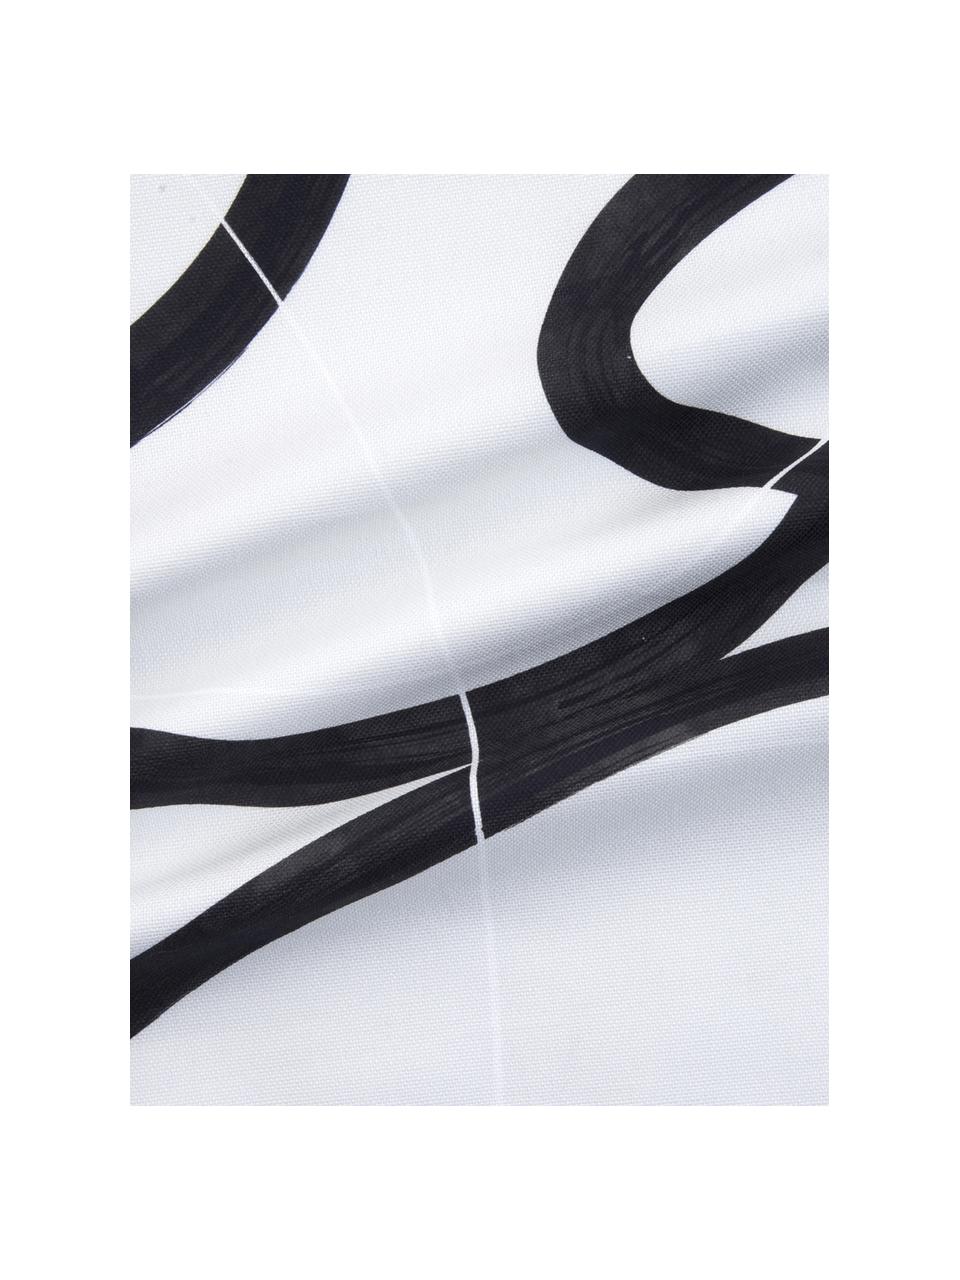 Kussenhoes Elijah met abstracte print, 100% katoen, Beige, zwart, wit, 40 x 40 cm